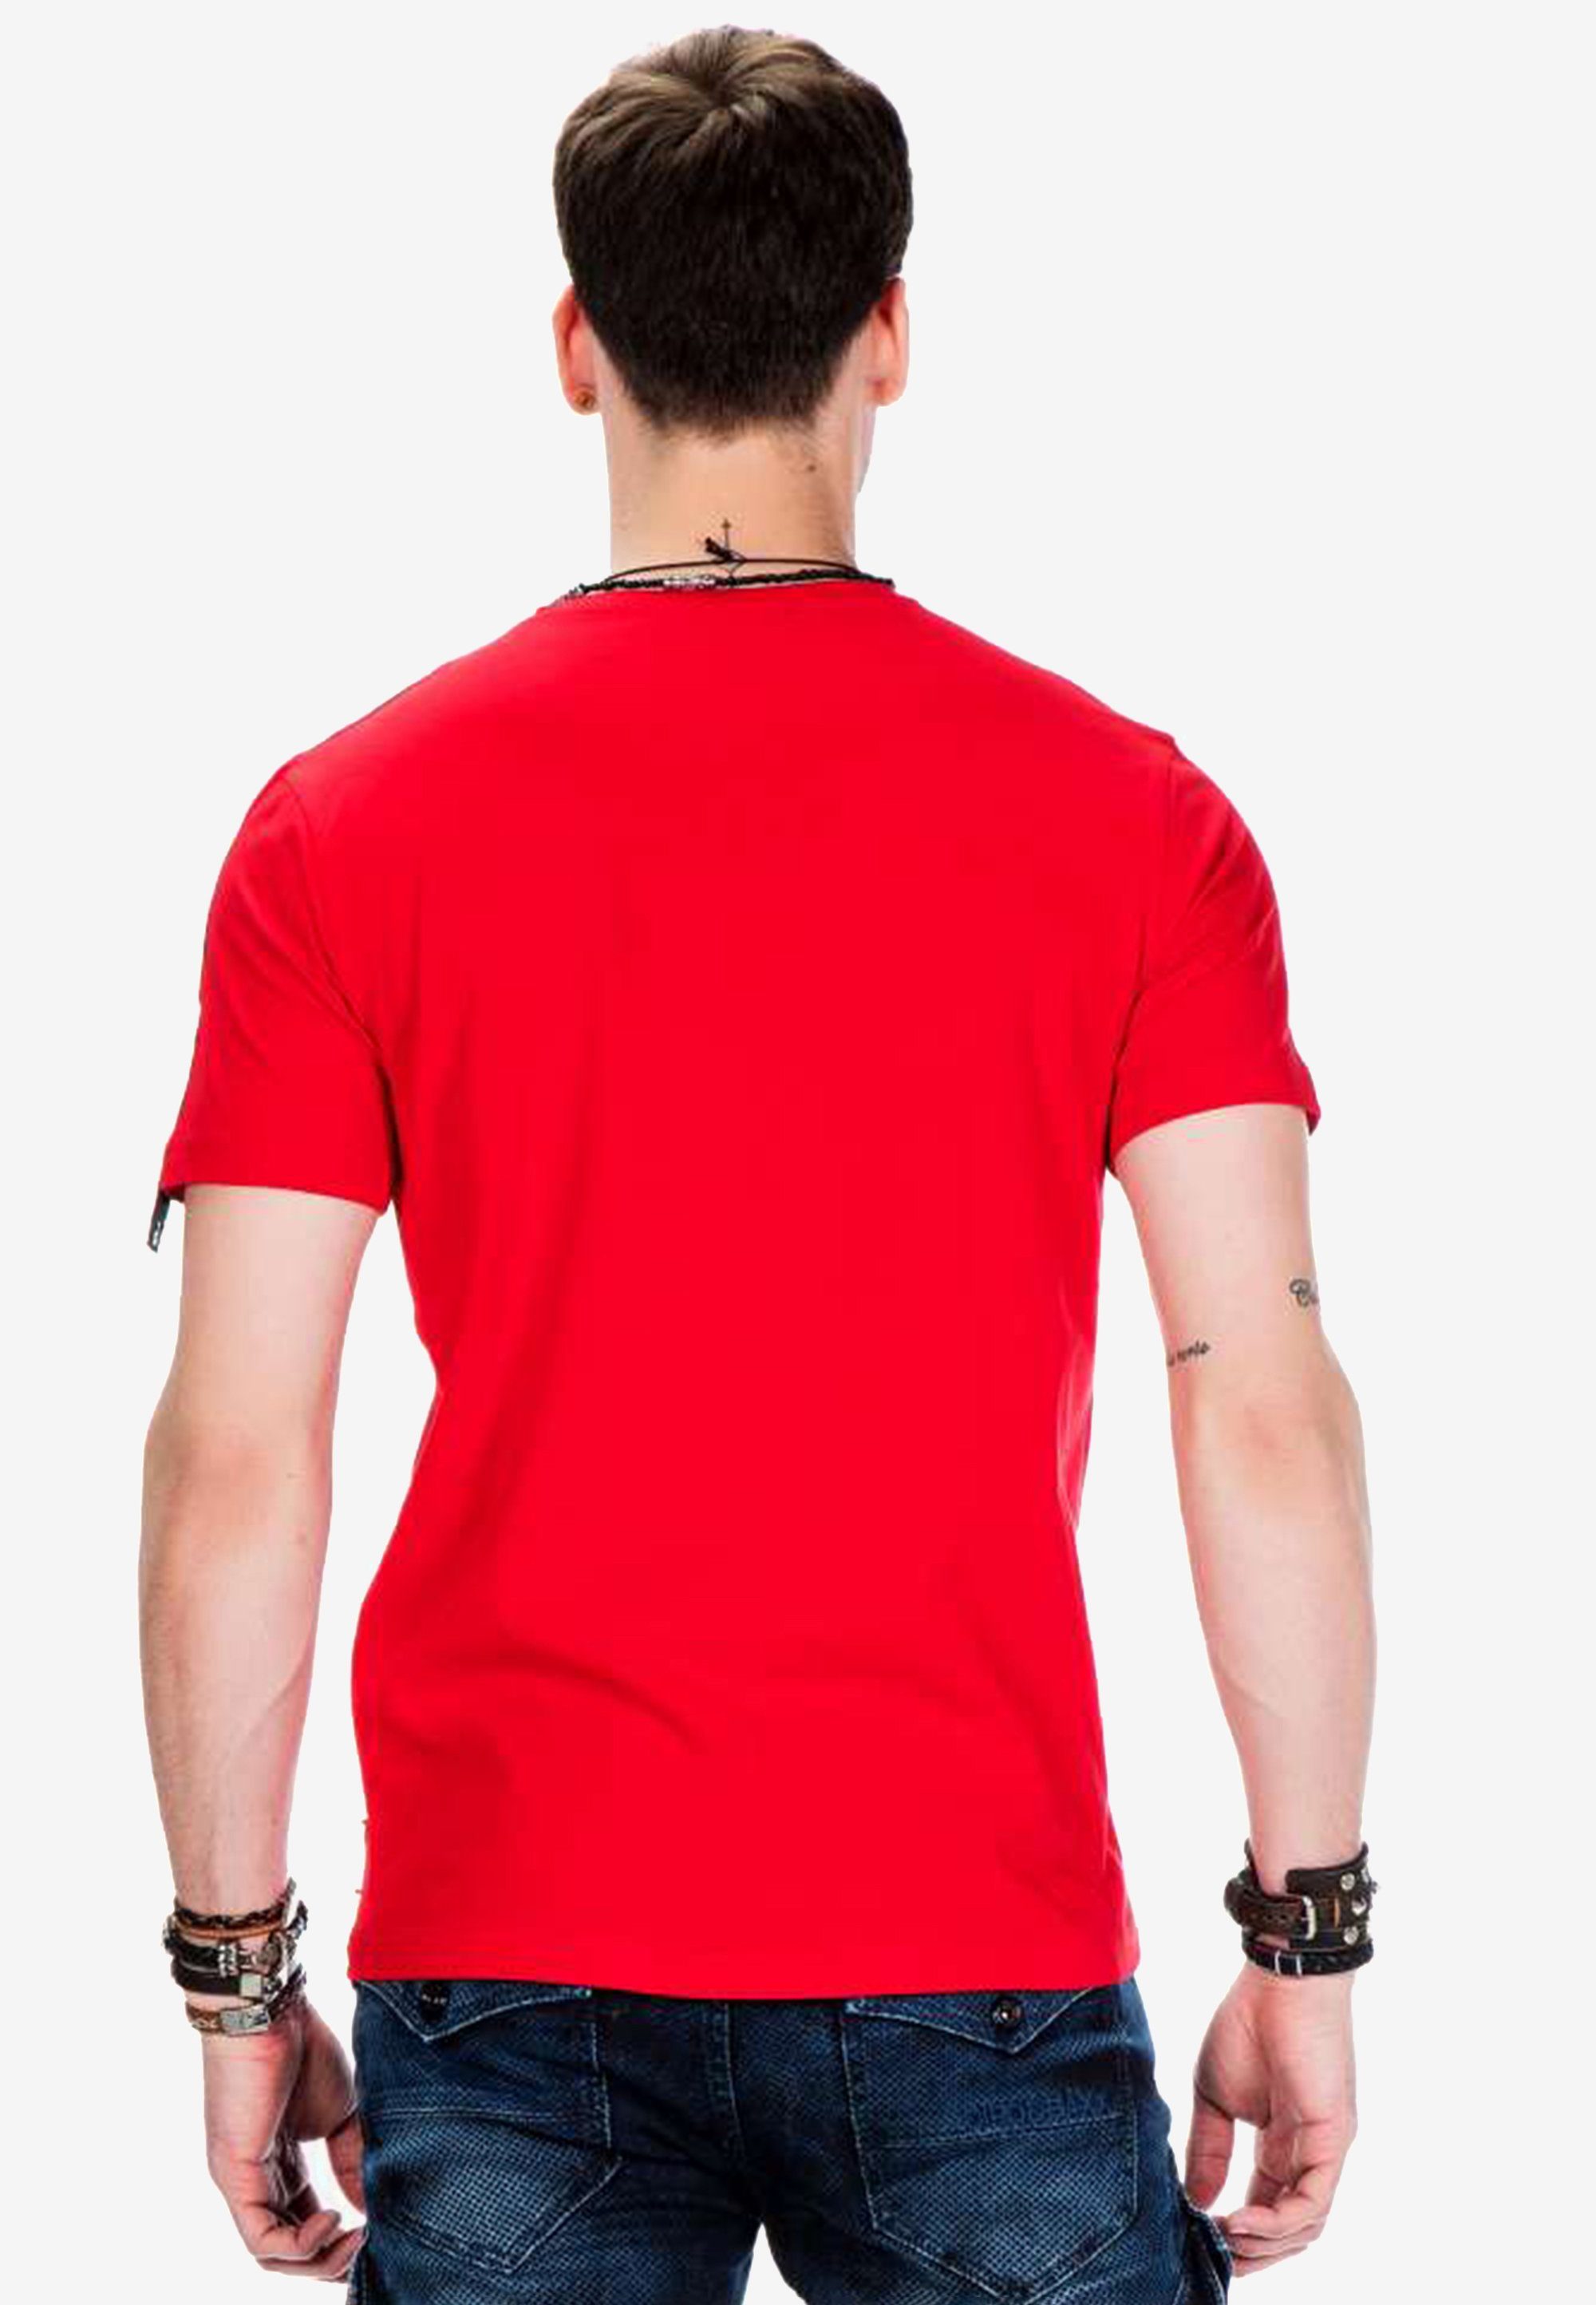 mit Cipo rot T-Shirt Baxx & kleiner Motivtasche